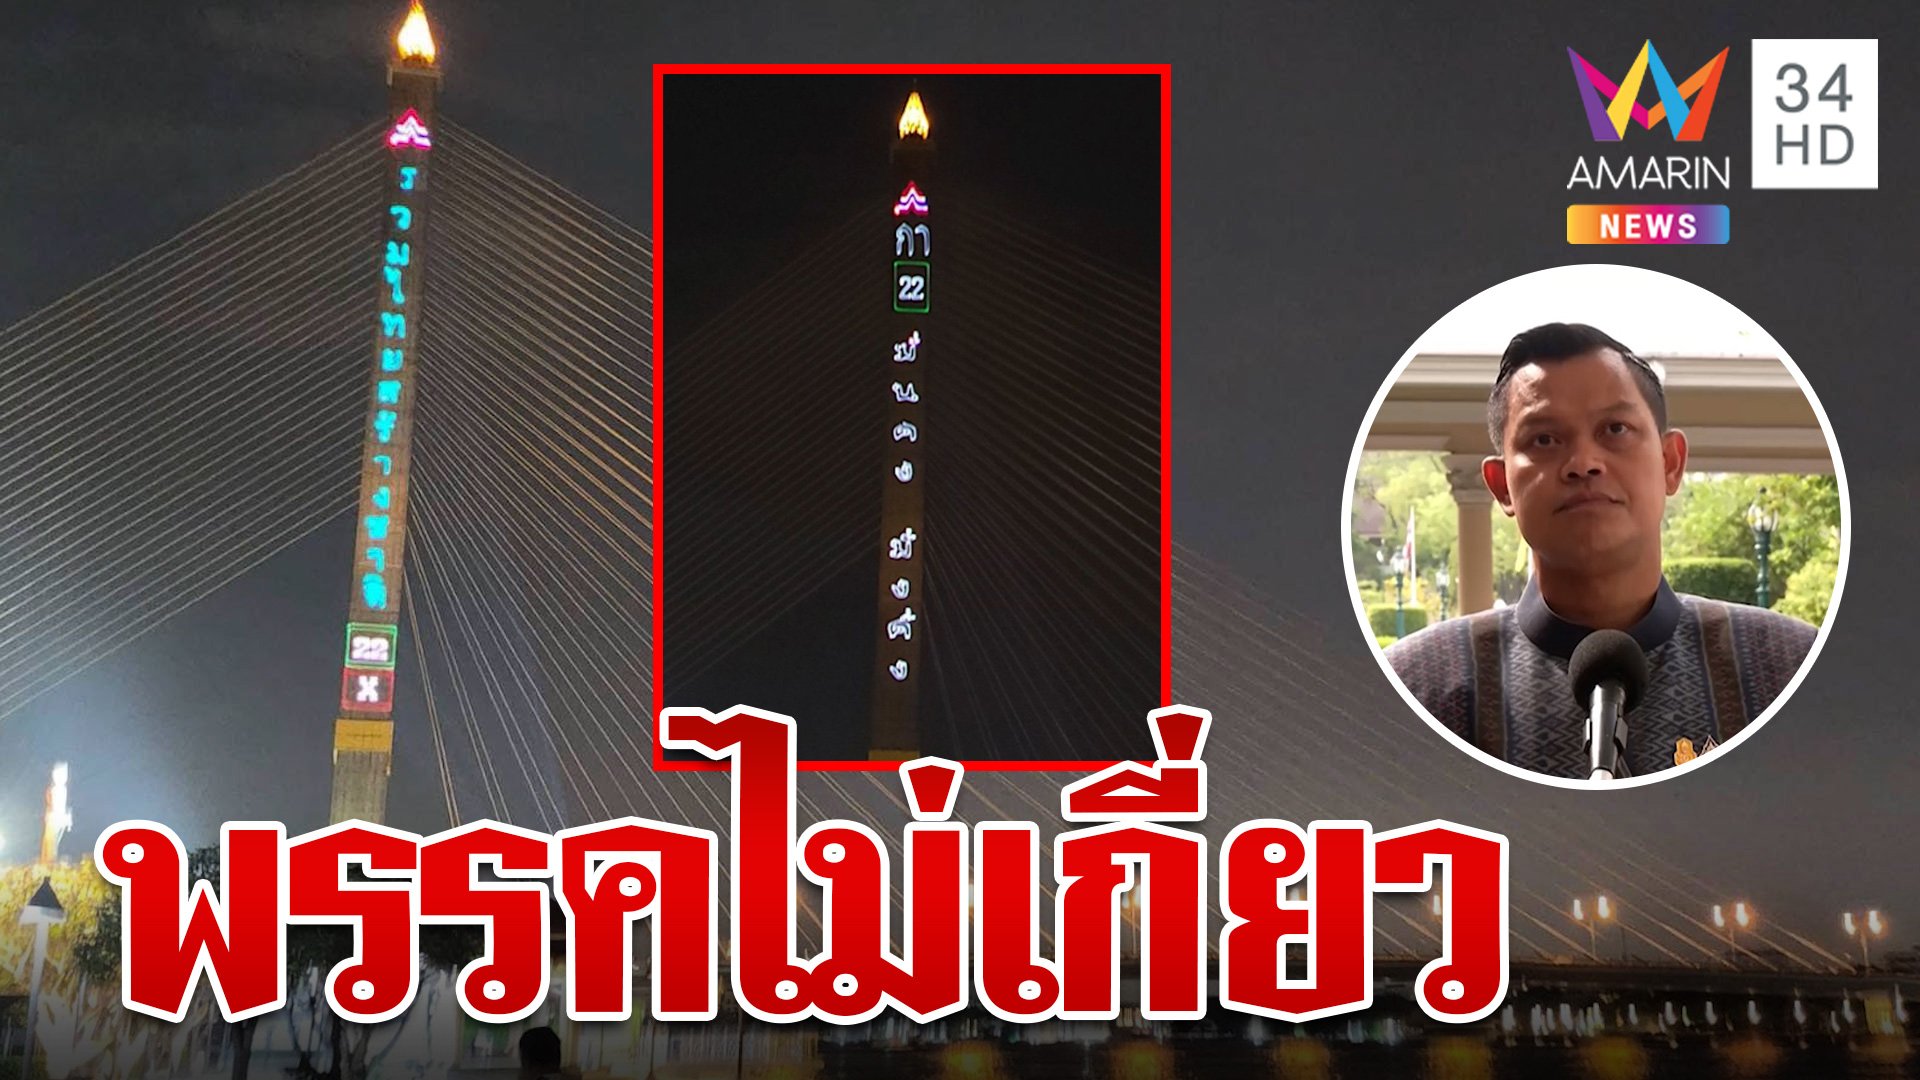 แจงให้วุ่น! ดราม่ารวมไทยสร้างชาติยิงเลเซอร์หาเสียงกลางสะพานพระราม 8 | ทุบโต๊ะข่าว | 9 พ.ค. 66 | AMARIN TVHD34